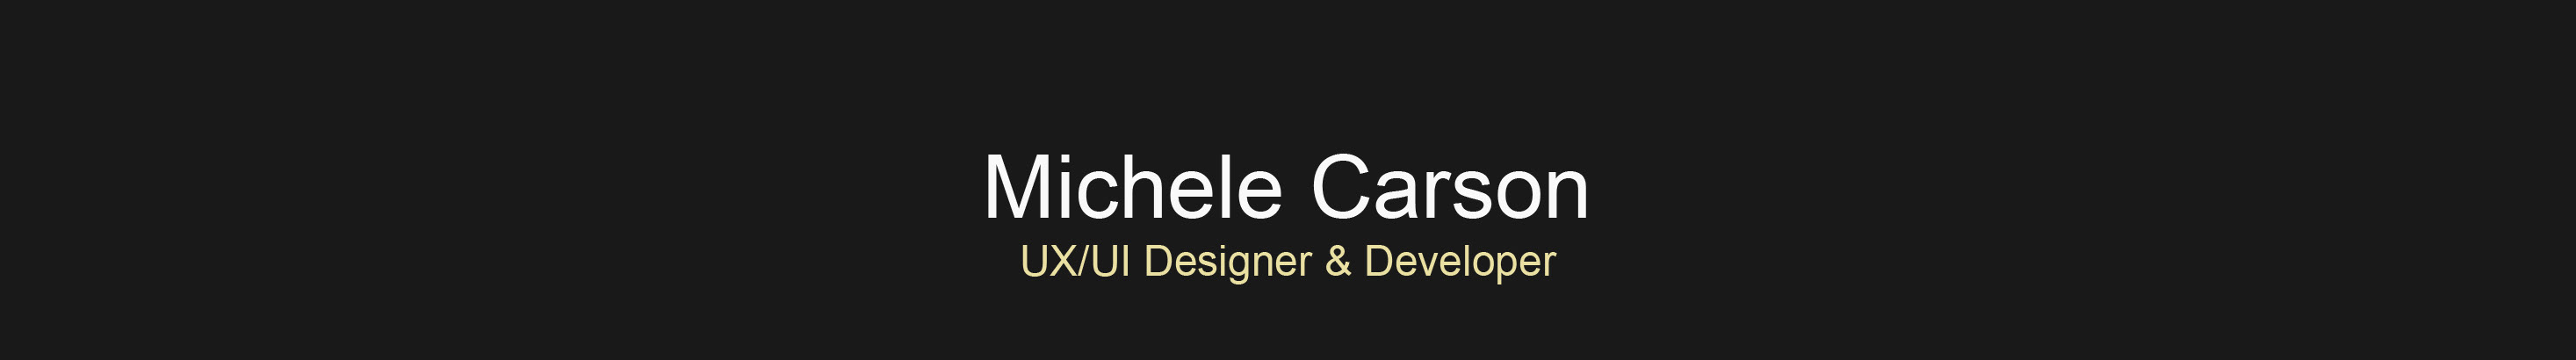 Michele Carson's profile banner